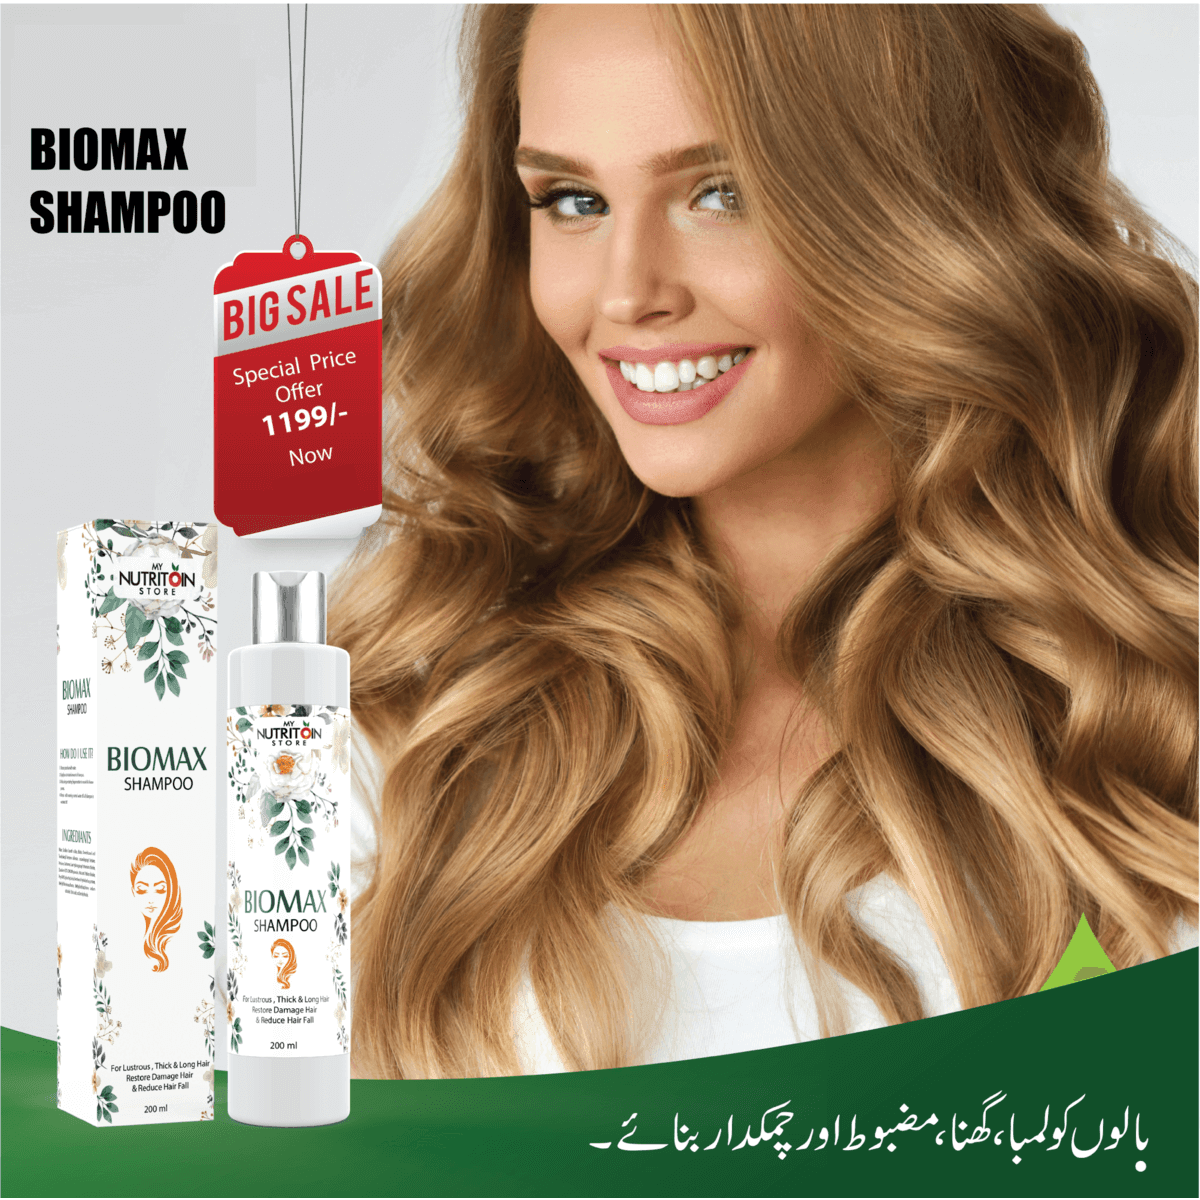 BIOMAX HAIR SHAMPOO - Healthifyme.pk